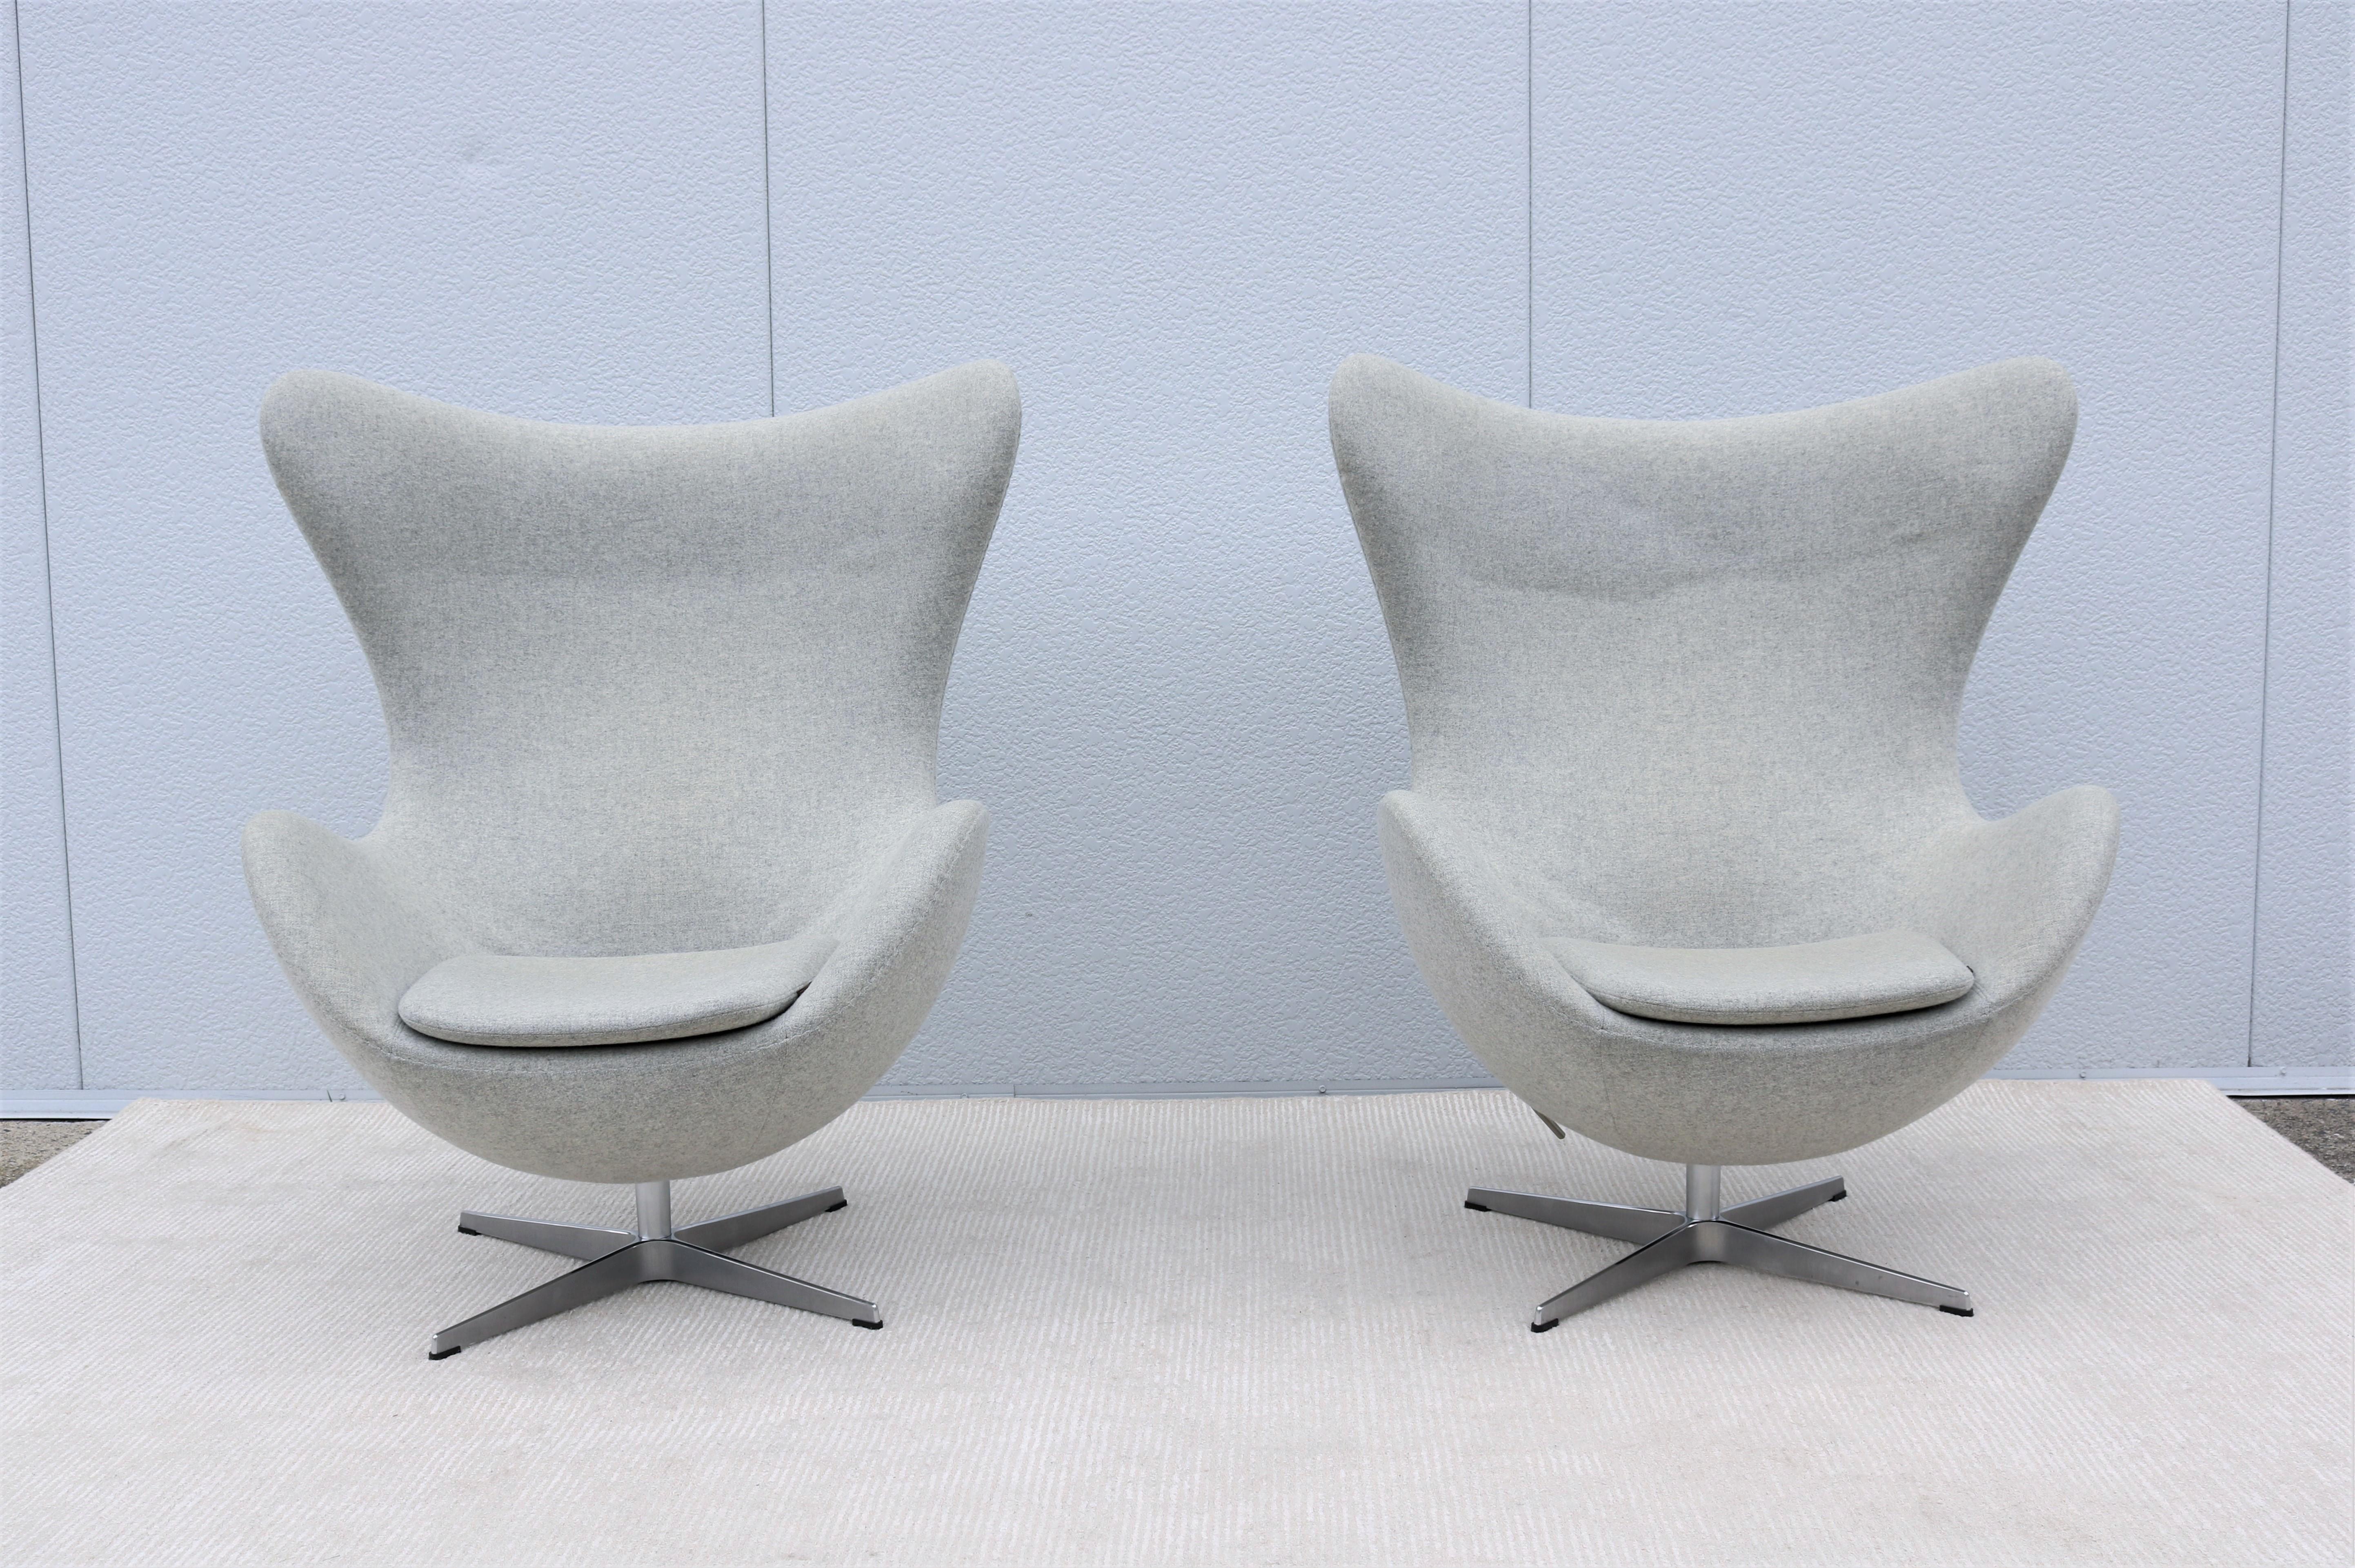 Polish Danish Mid-Century Modern Arne Jacobsen for Fritz Hansen Egg Lounge Chair For Sale